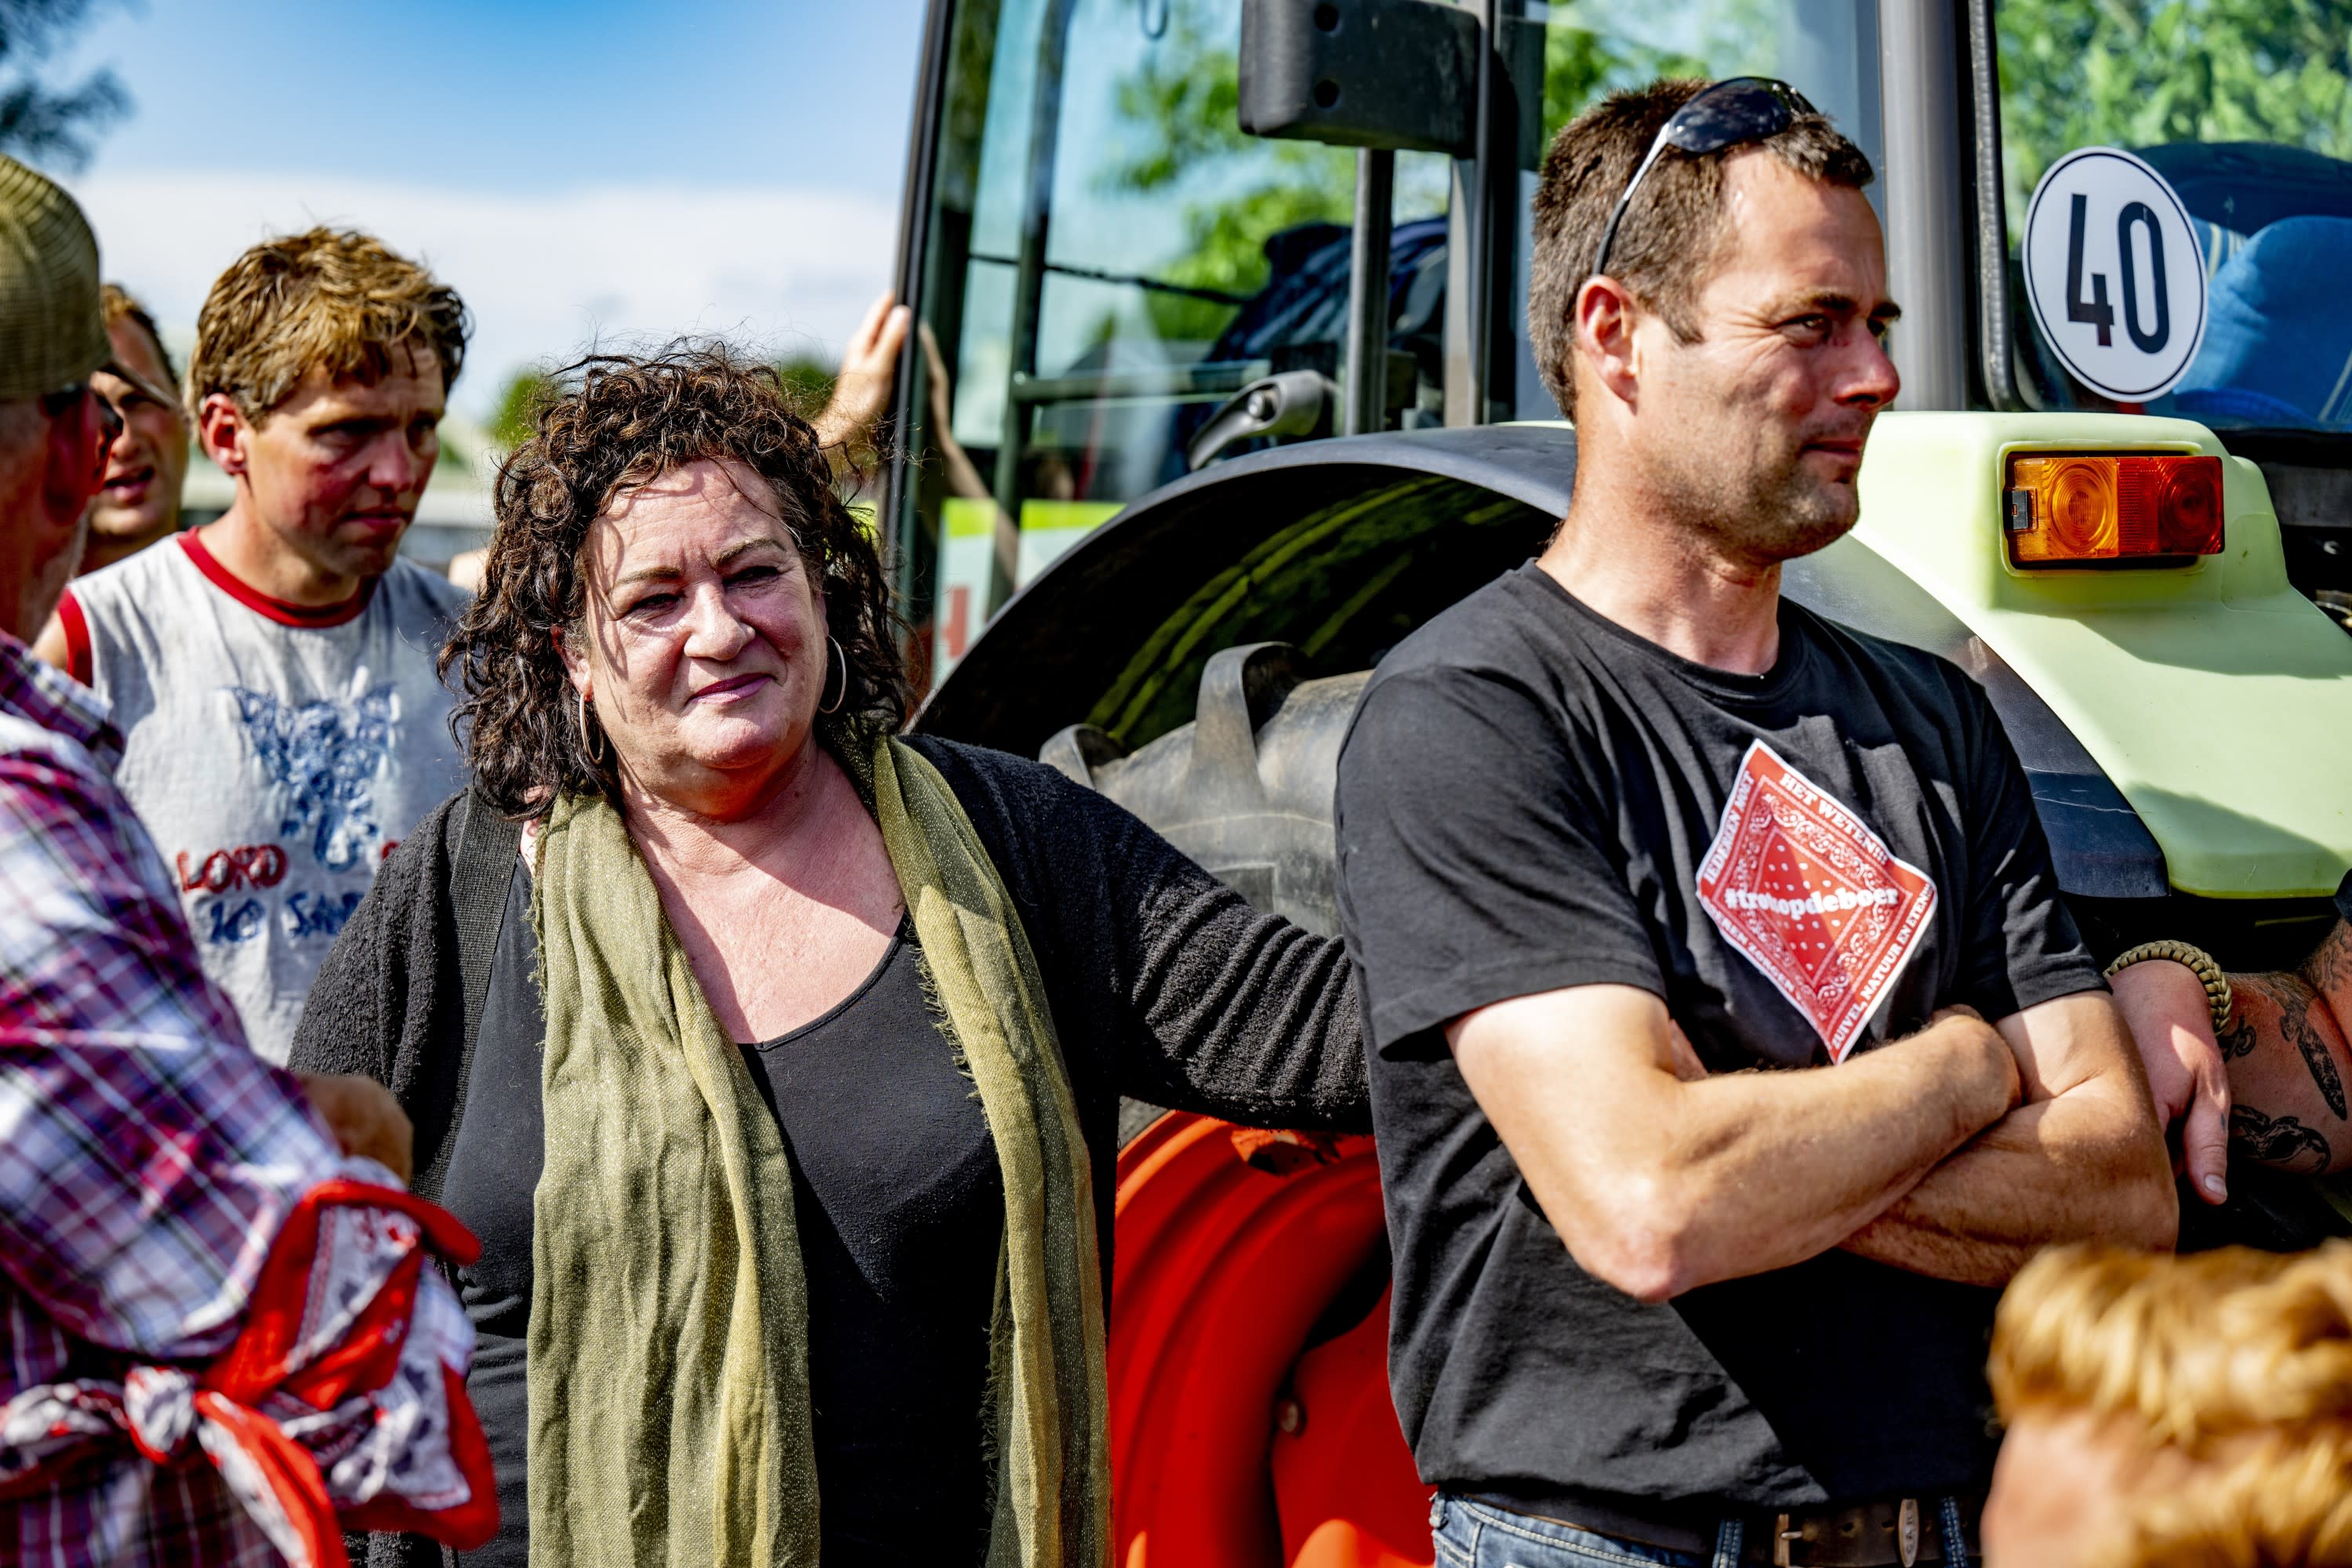 BBB-leider Van der Plas tegen boeren: stop gevaarlijke acties